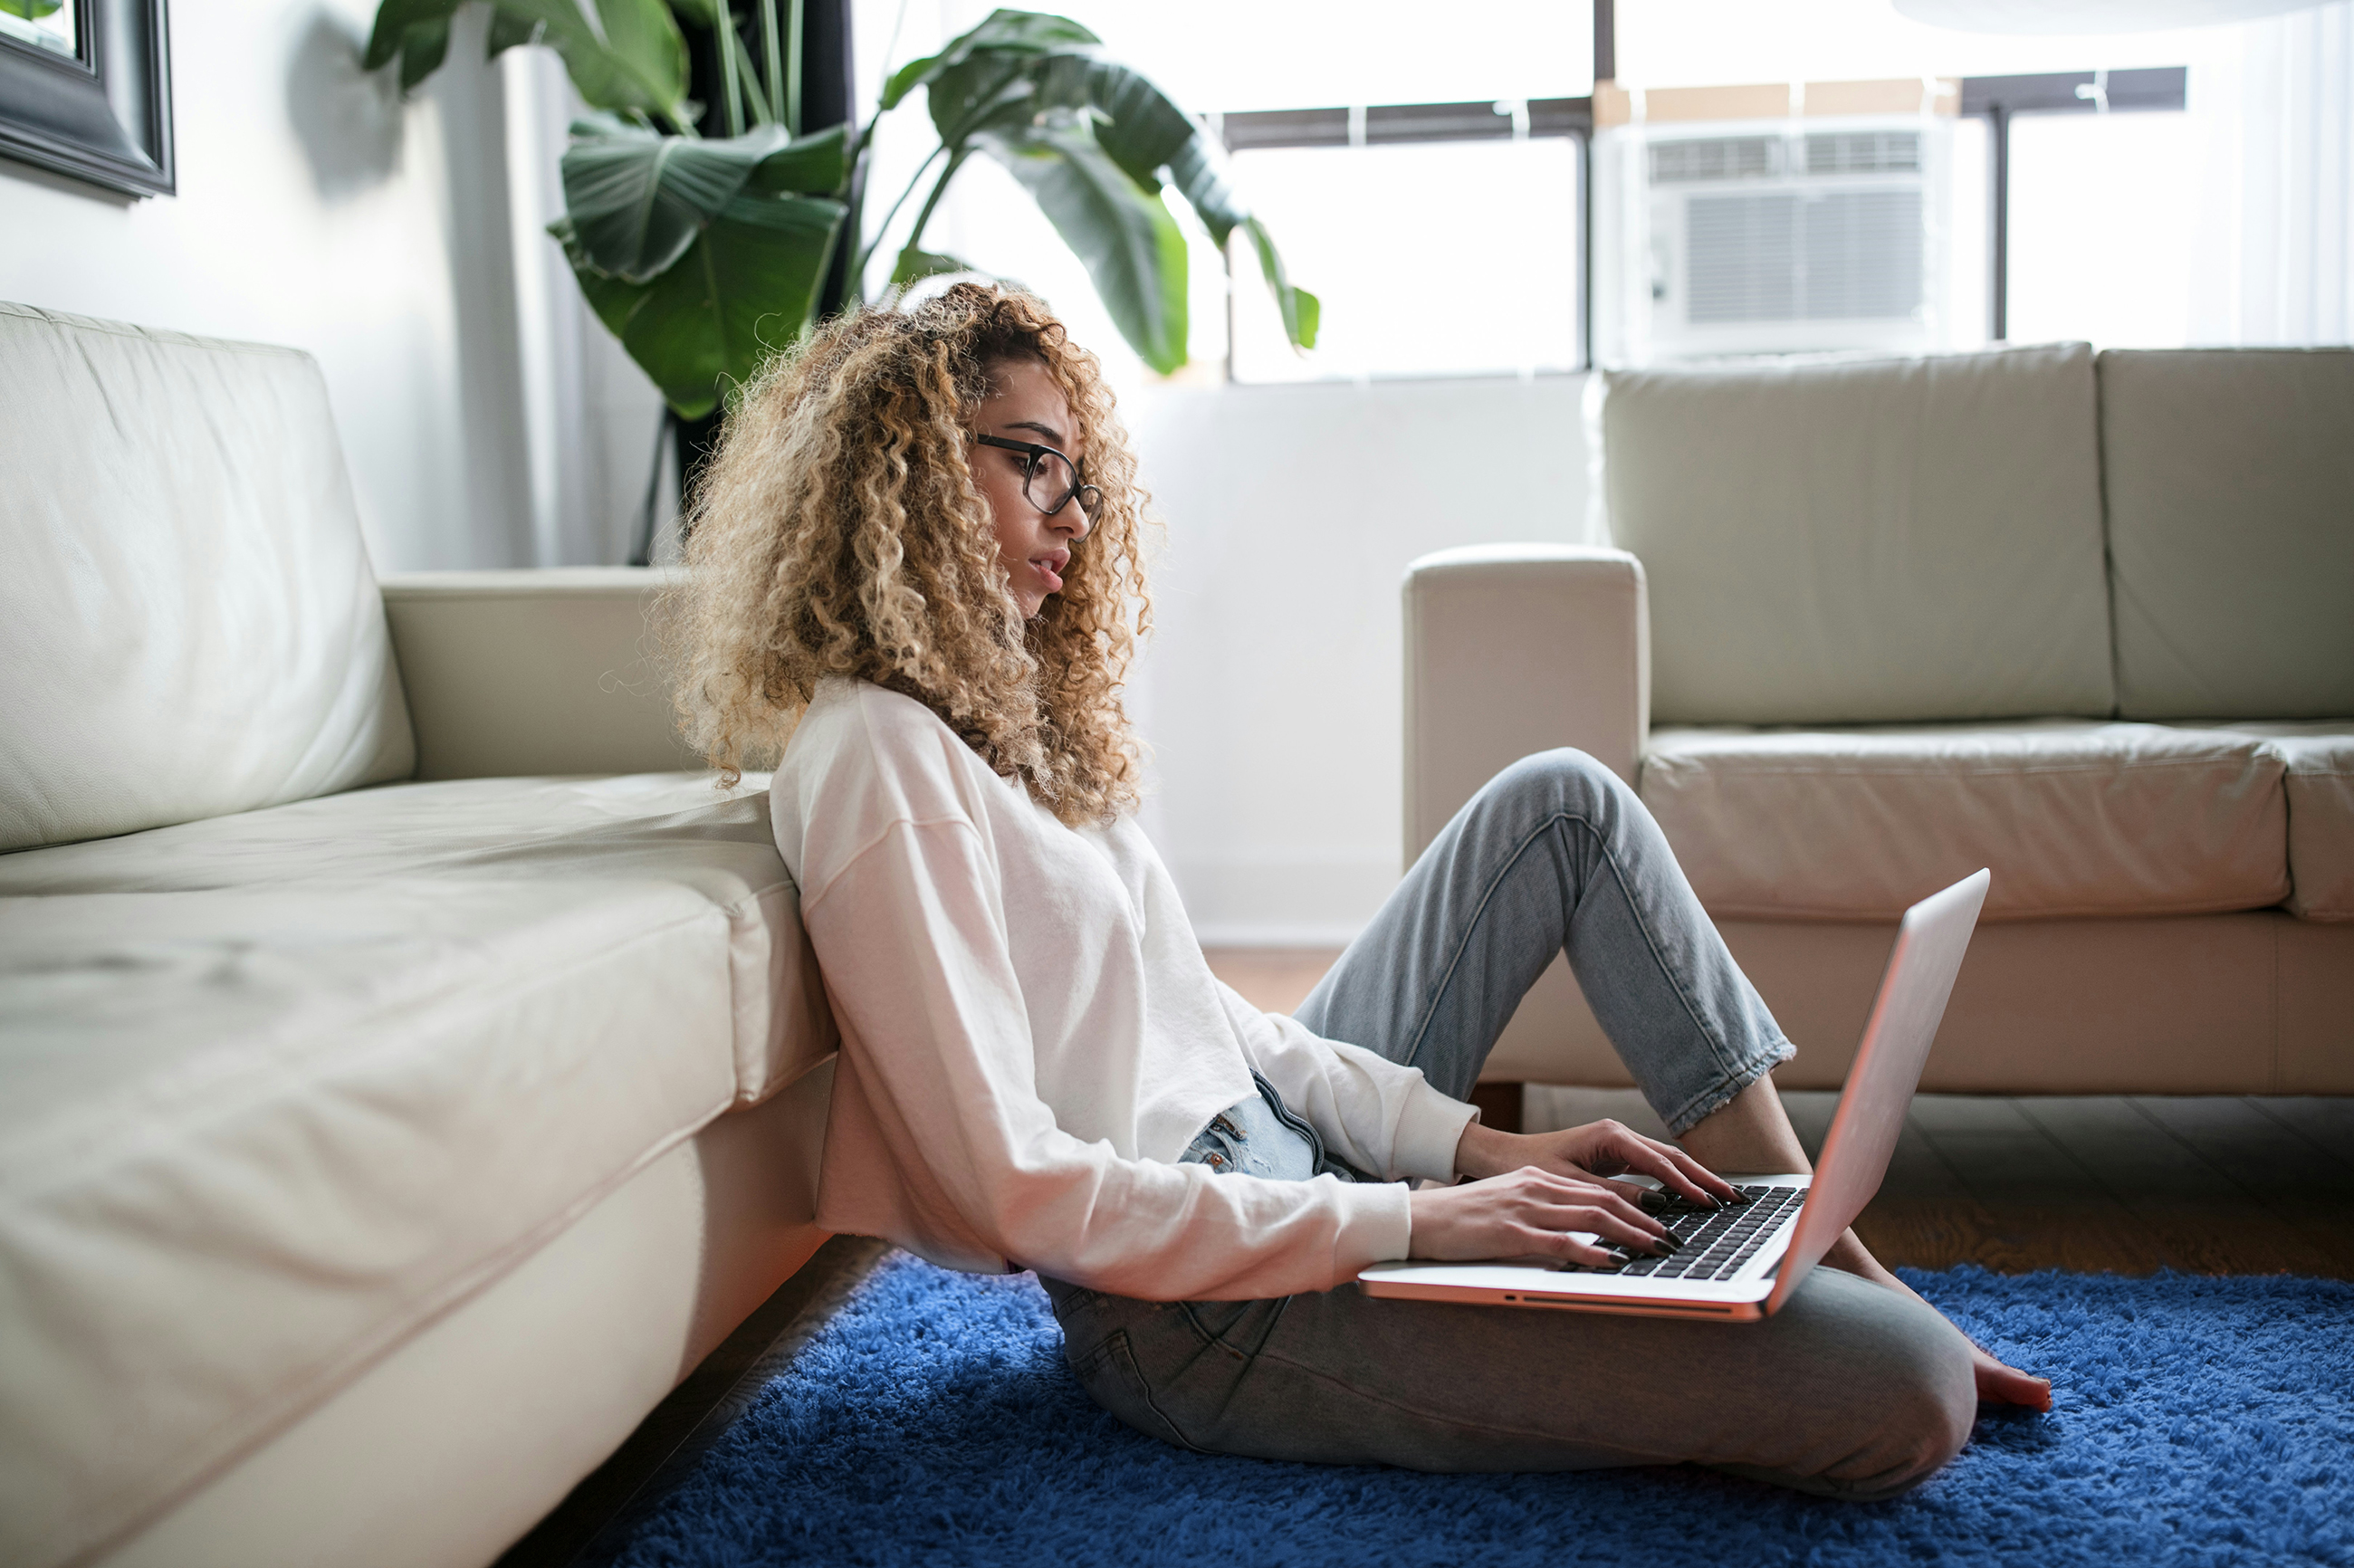 Frau mit langen blonden Locken sitzt auf dem Teppich in ihrer Wohnung und arbeitet an einem Laptop auf ihrem Schoß